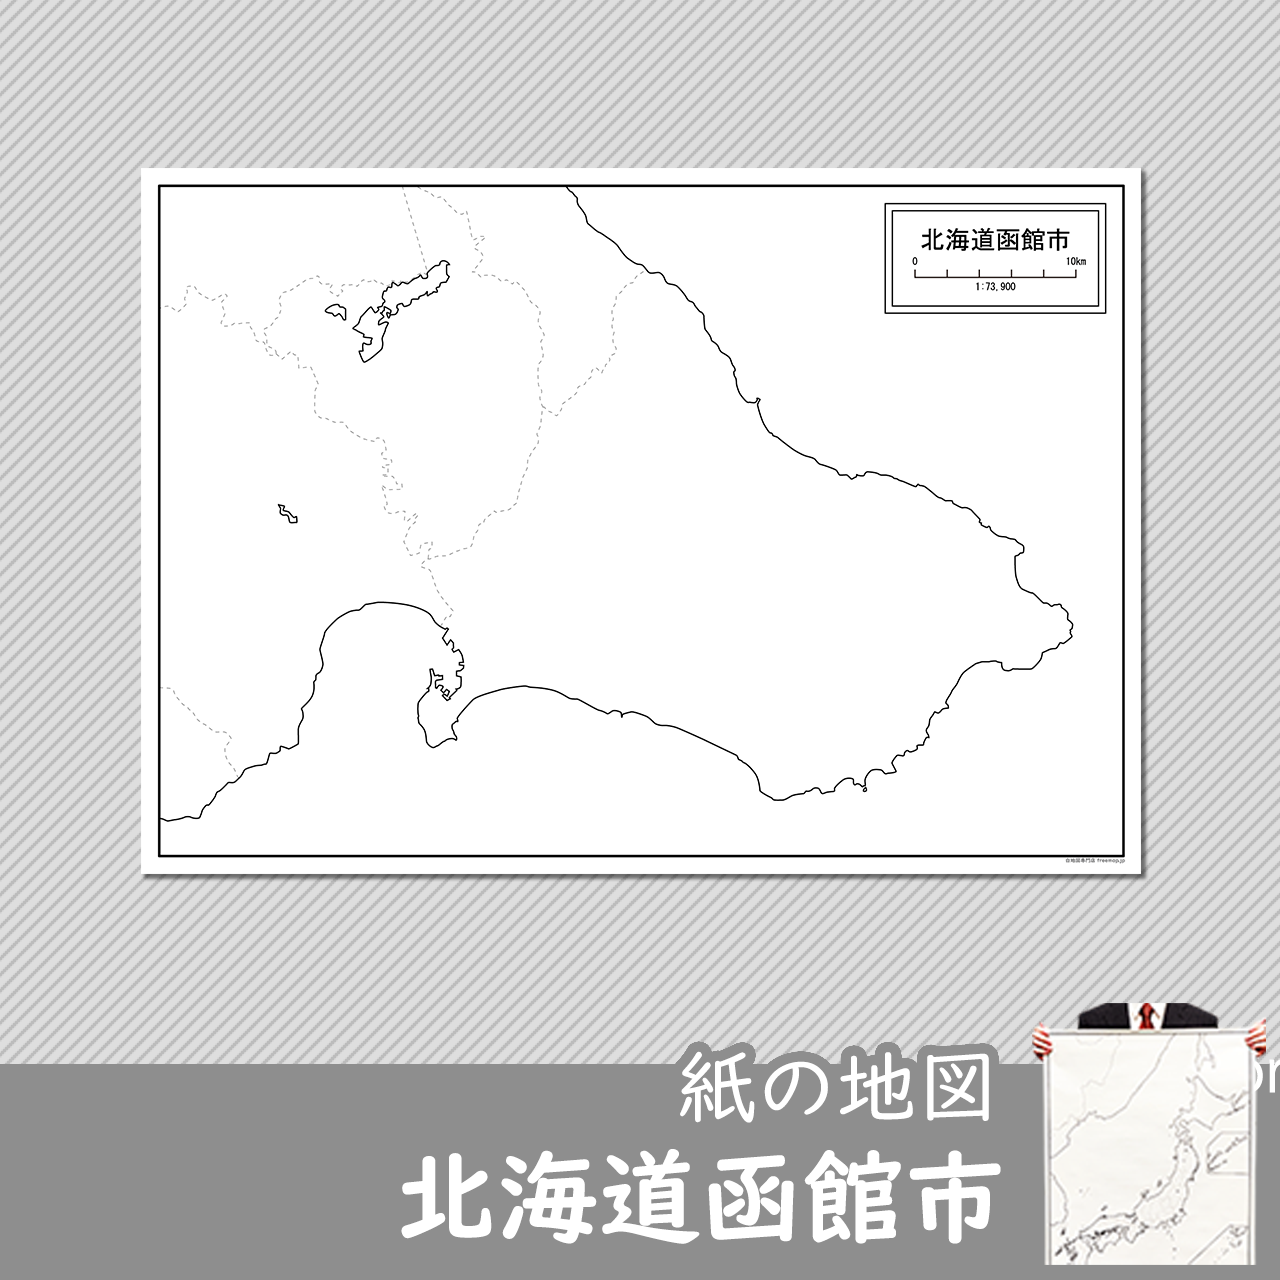 函館市の紙の白地図のサムネイル